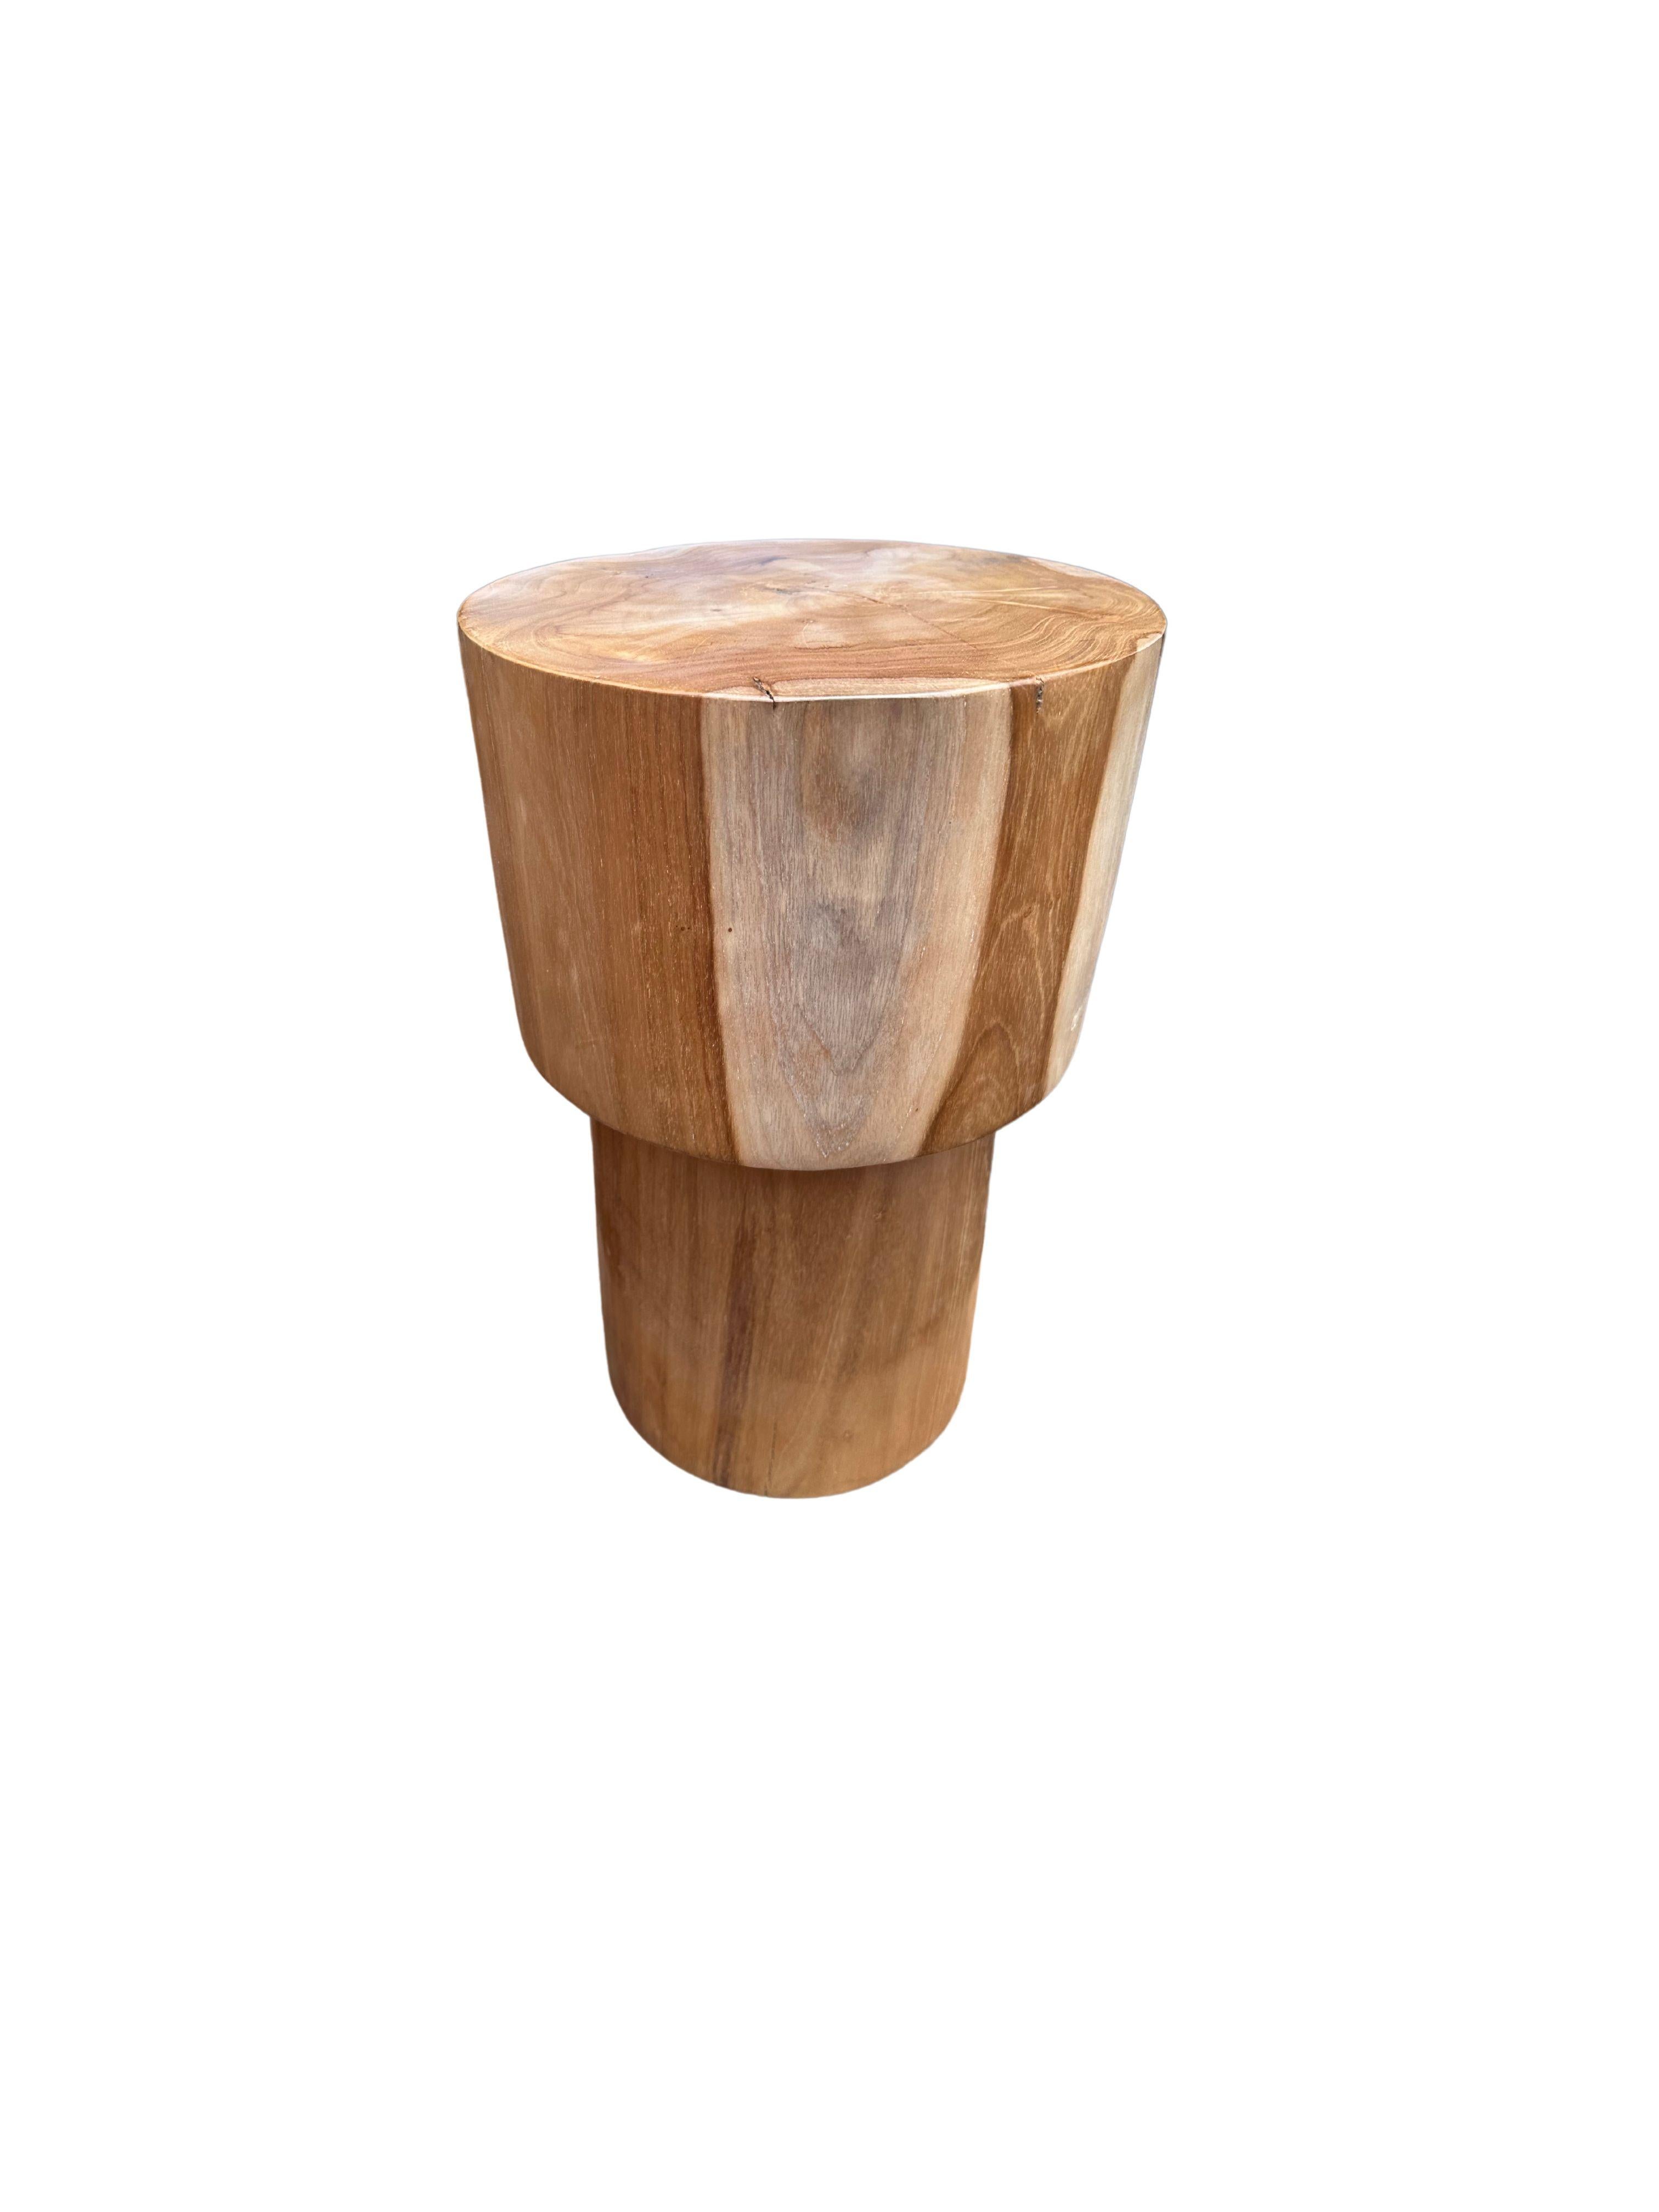 Une table d'appoint merveilleusement sculpturale fabriquée en bois de teck. Ses bords subtilement incurvés ajoutent à son charme. Cette table présente un magnifique éventail de textures et de nuances de bois. L'objet parfait pour apporter de la